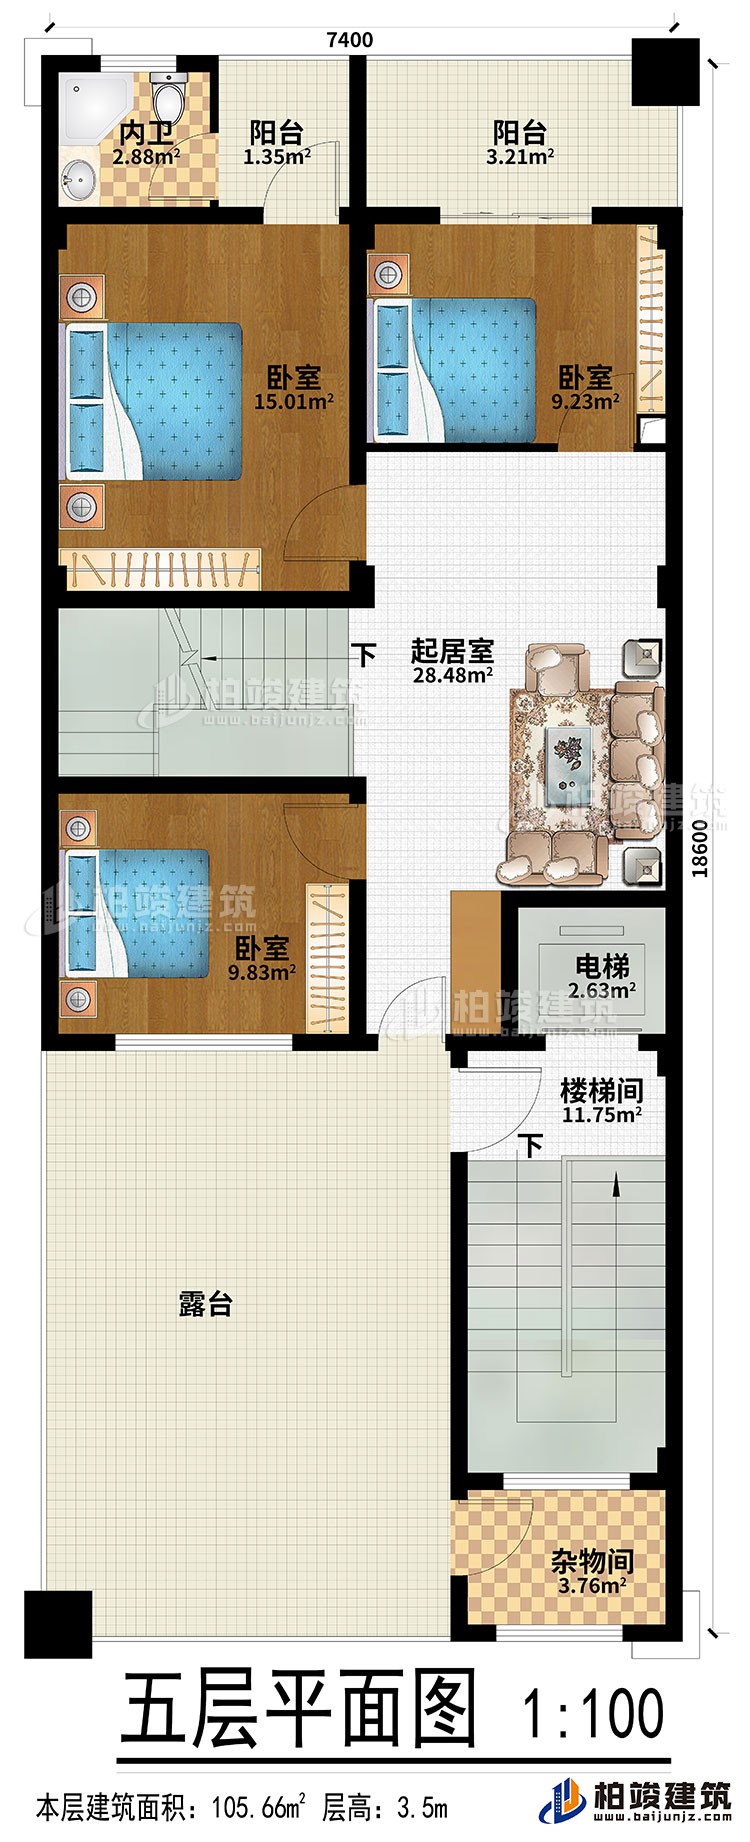 五层：起居室、3卧室、楼梯间、电梯、内卫、2阳台、露台、杂物间